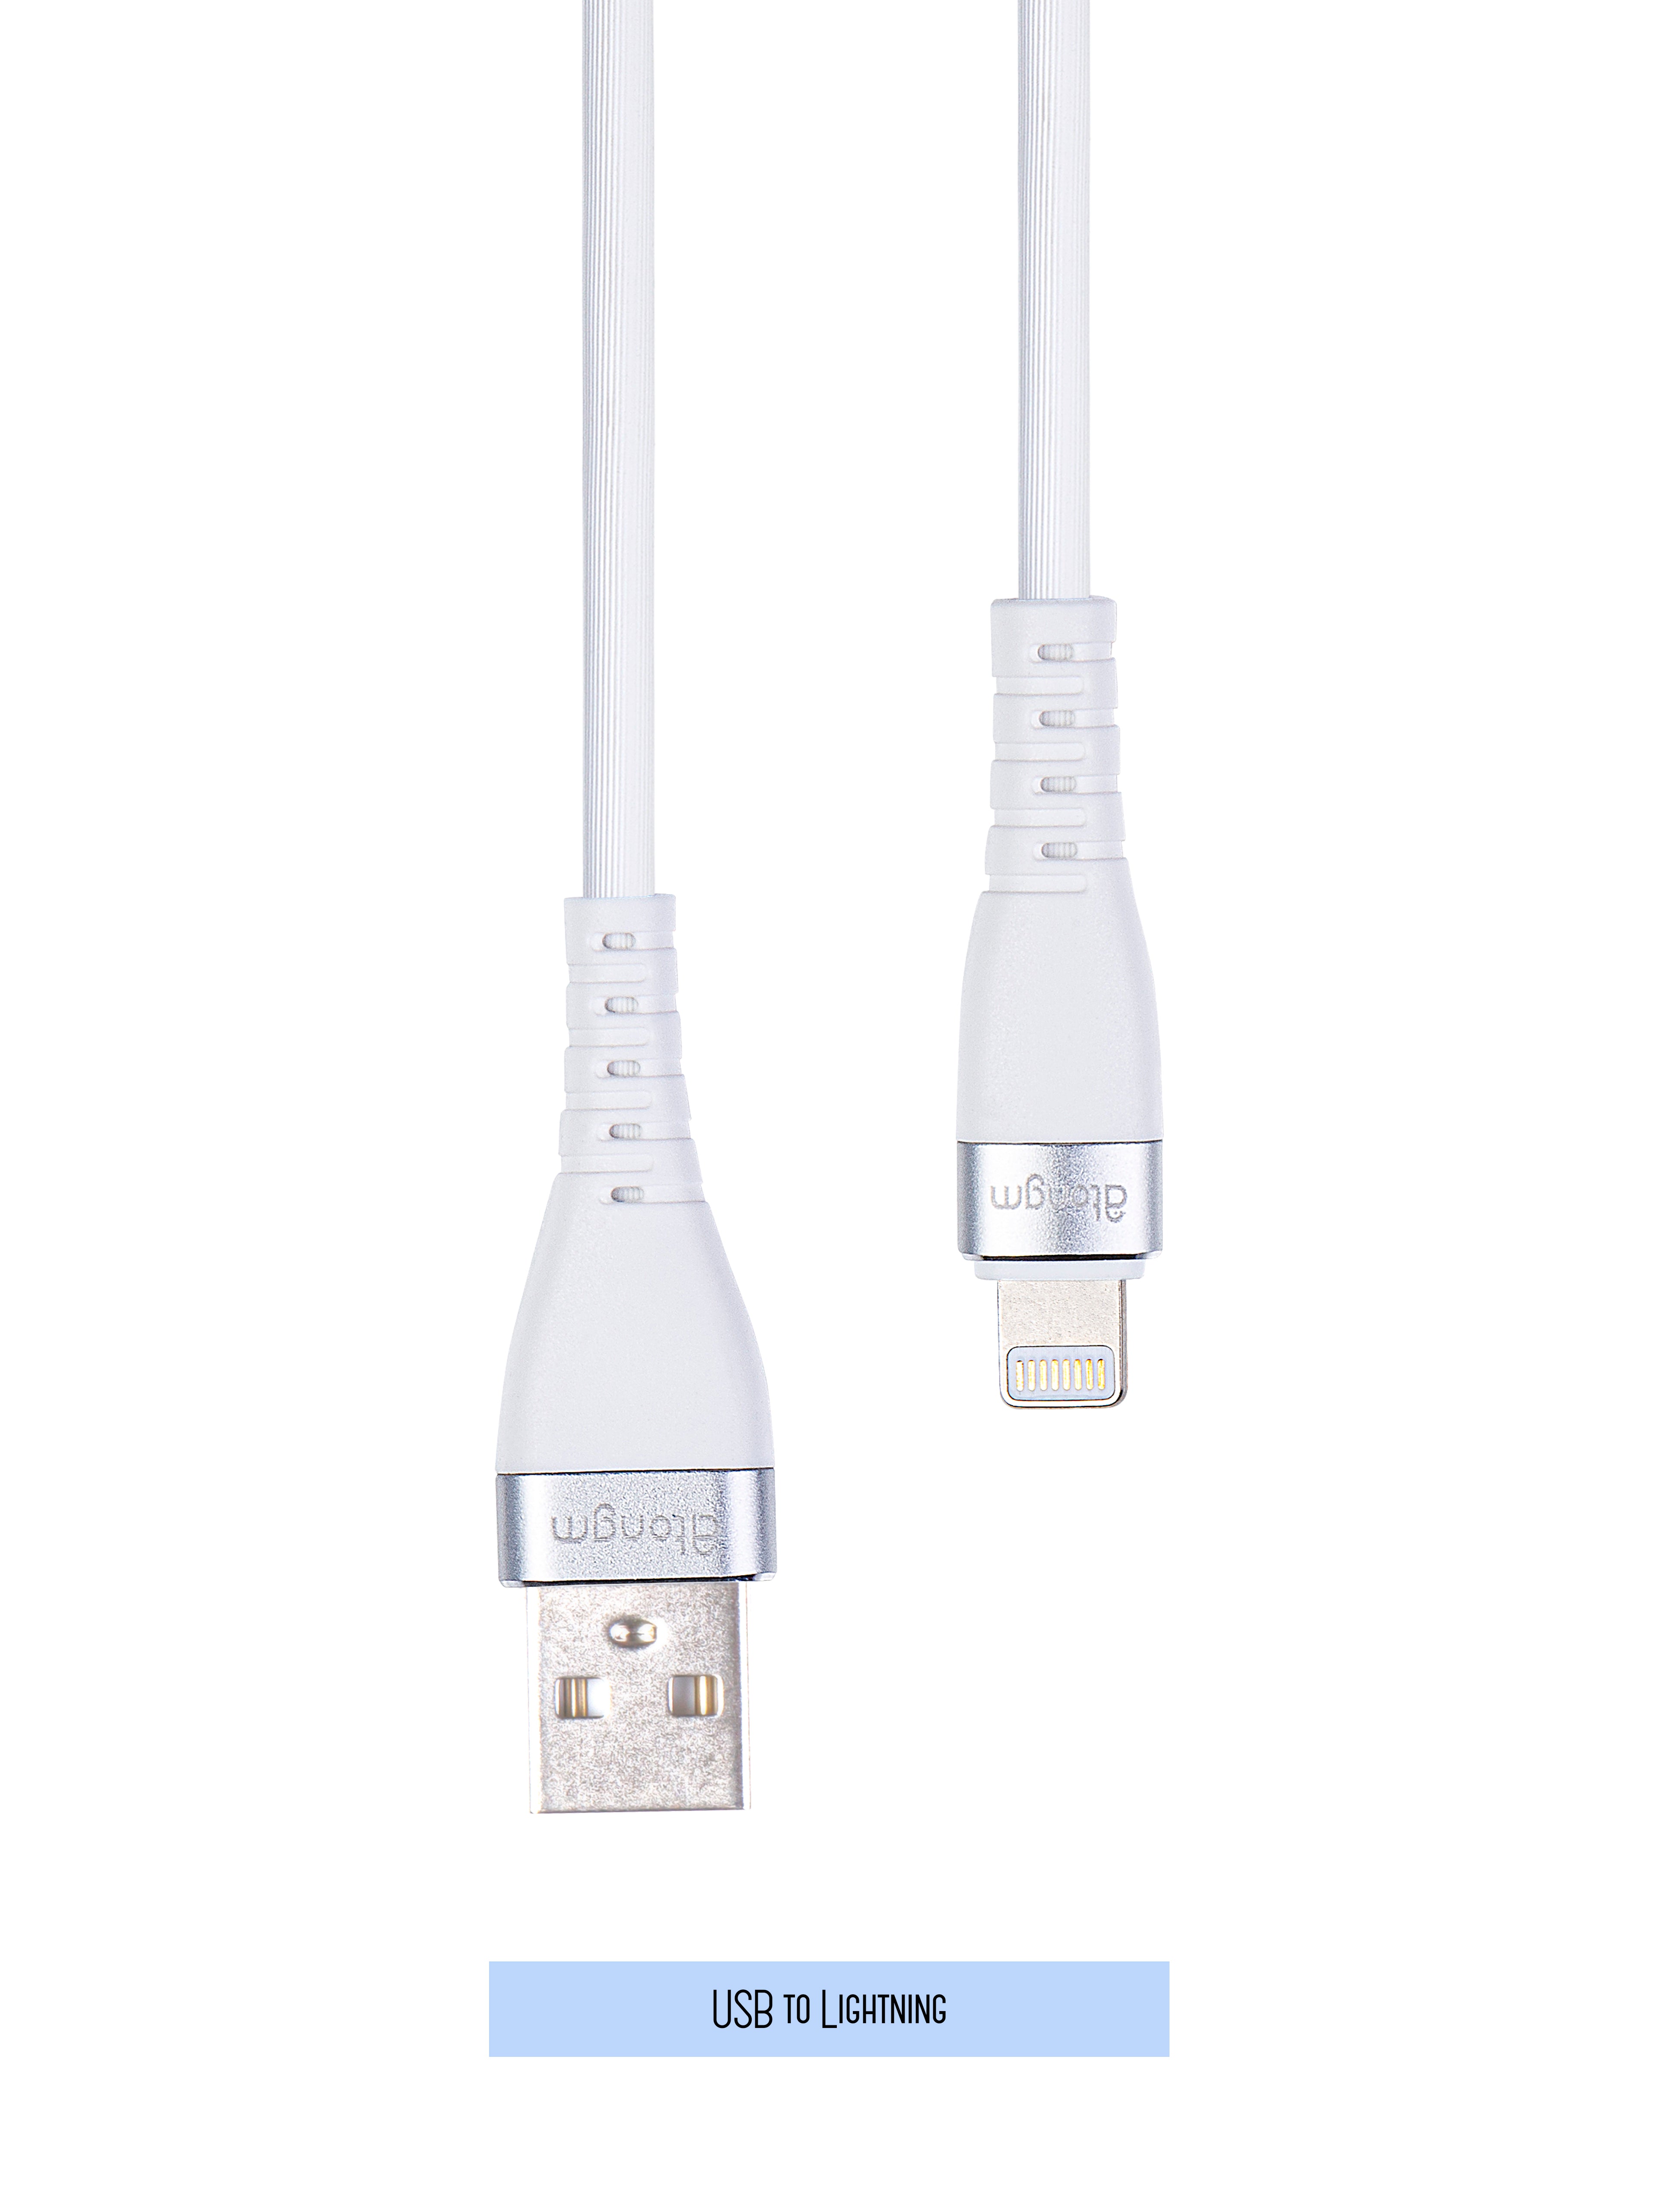 atongm 3A/60W USB to Lightning Şarj ve Data Kablo (1.2 Metre) Lisanslı Made For Apple